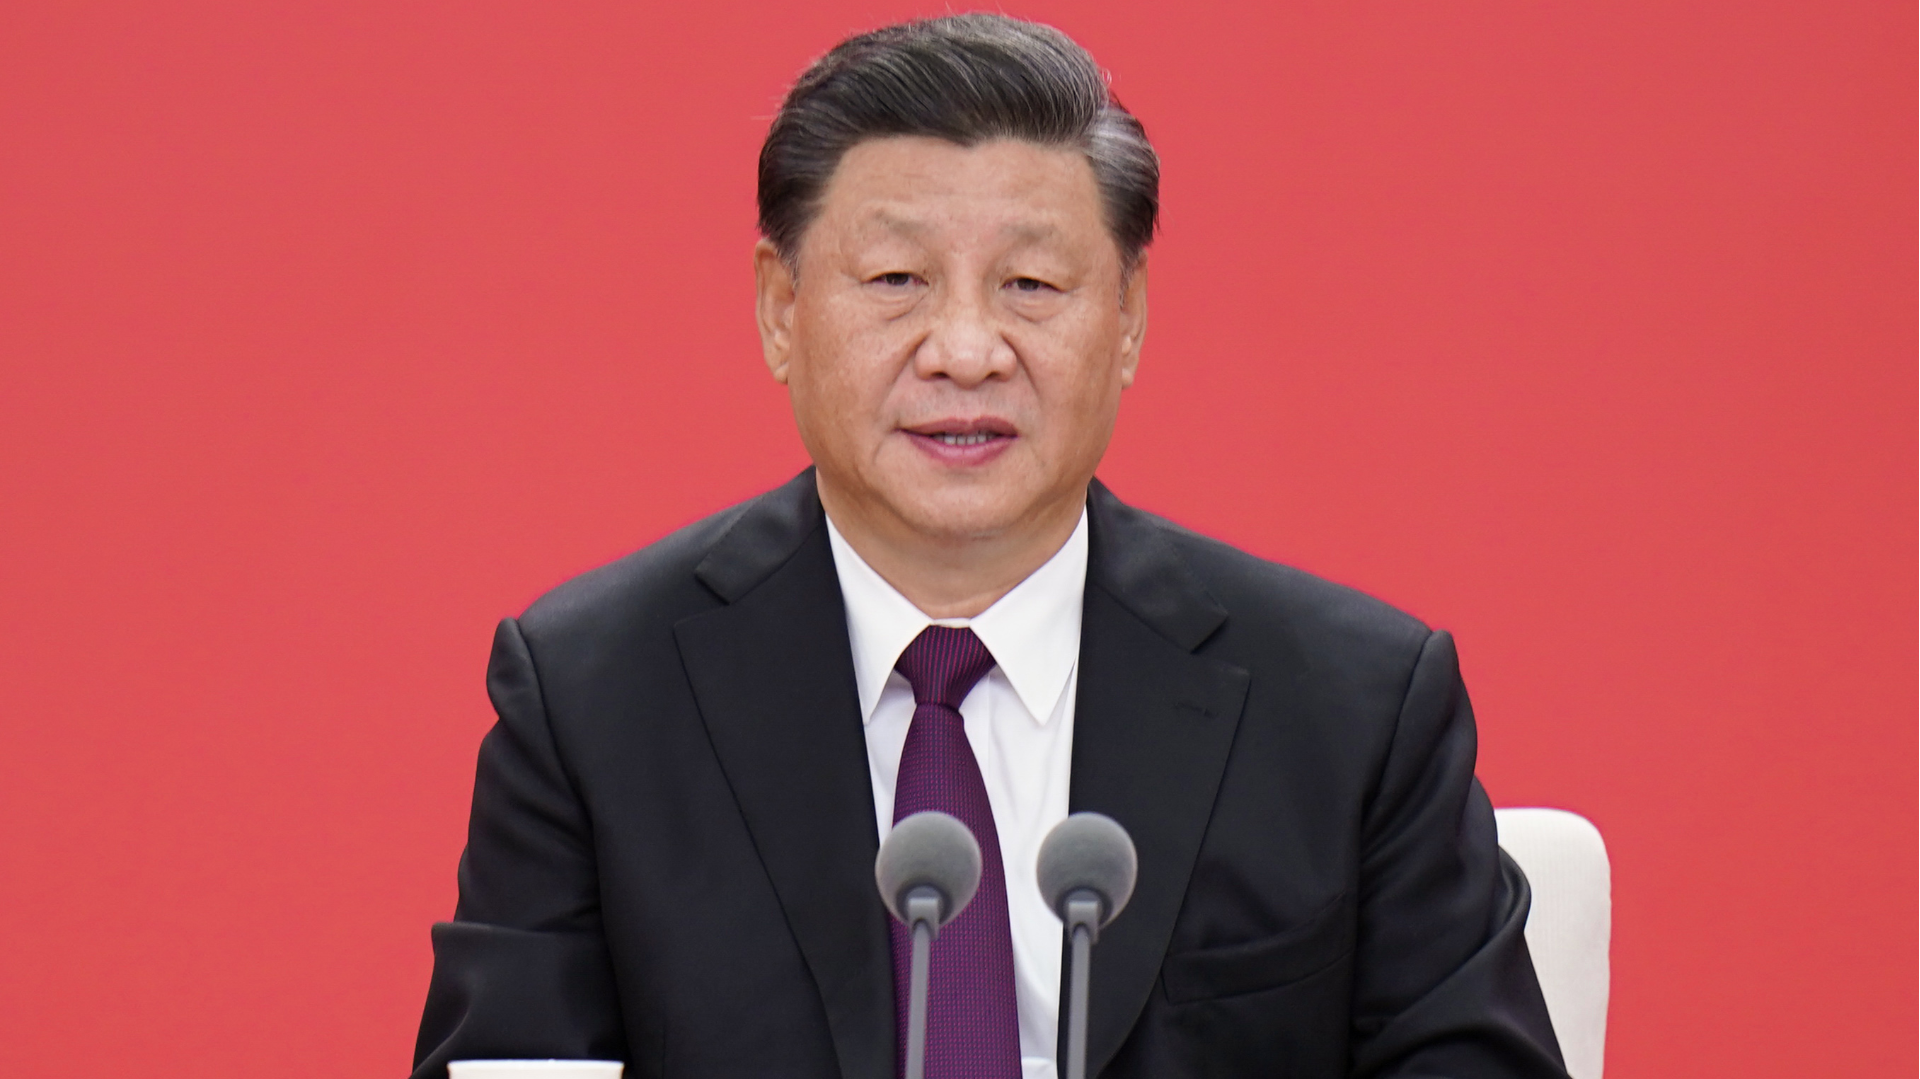 文匯社評 | 中國無懼霸權威脅  堅決捍衛國家利益